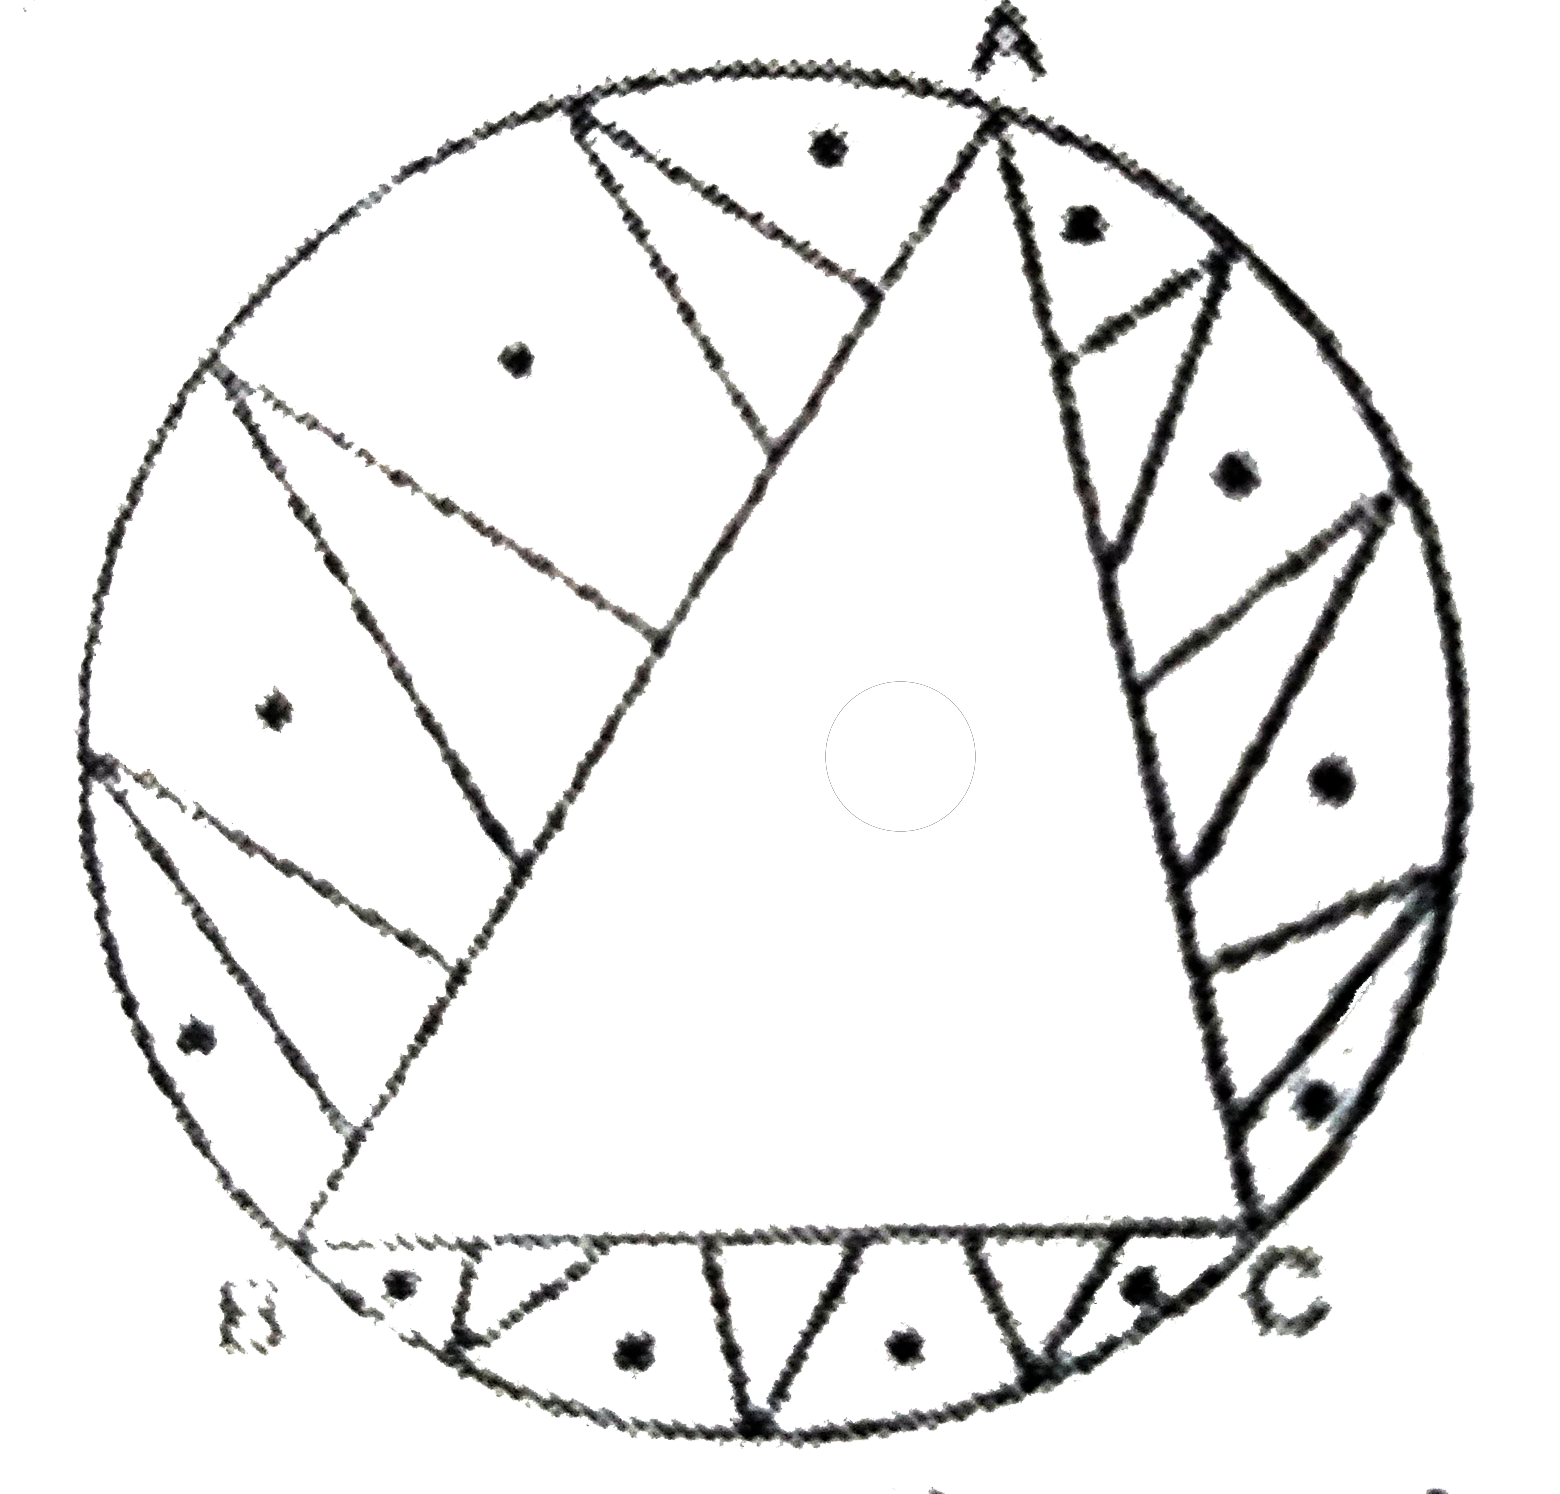 एक वृत्ताकार मेजपोश, जिसकी त्रिज्या 32 सेमी है, में बीच में एक समबाहु त्रिभुज ABC छोड़ते हुए एक डिजाइन बना हुआ है। जैसे निम्न आकृति में दिखाया गया है। इस डिजाइन का क्षेत्रफल ज्ञात कीजिए।